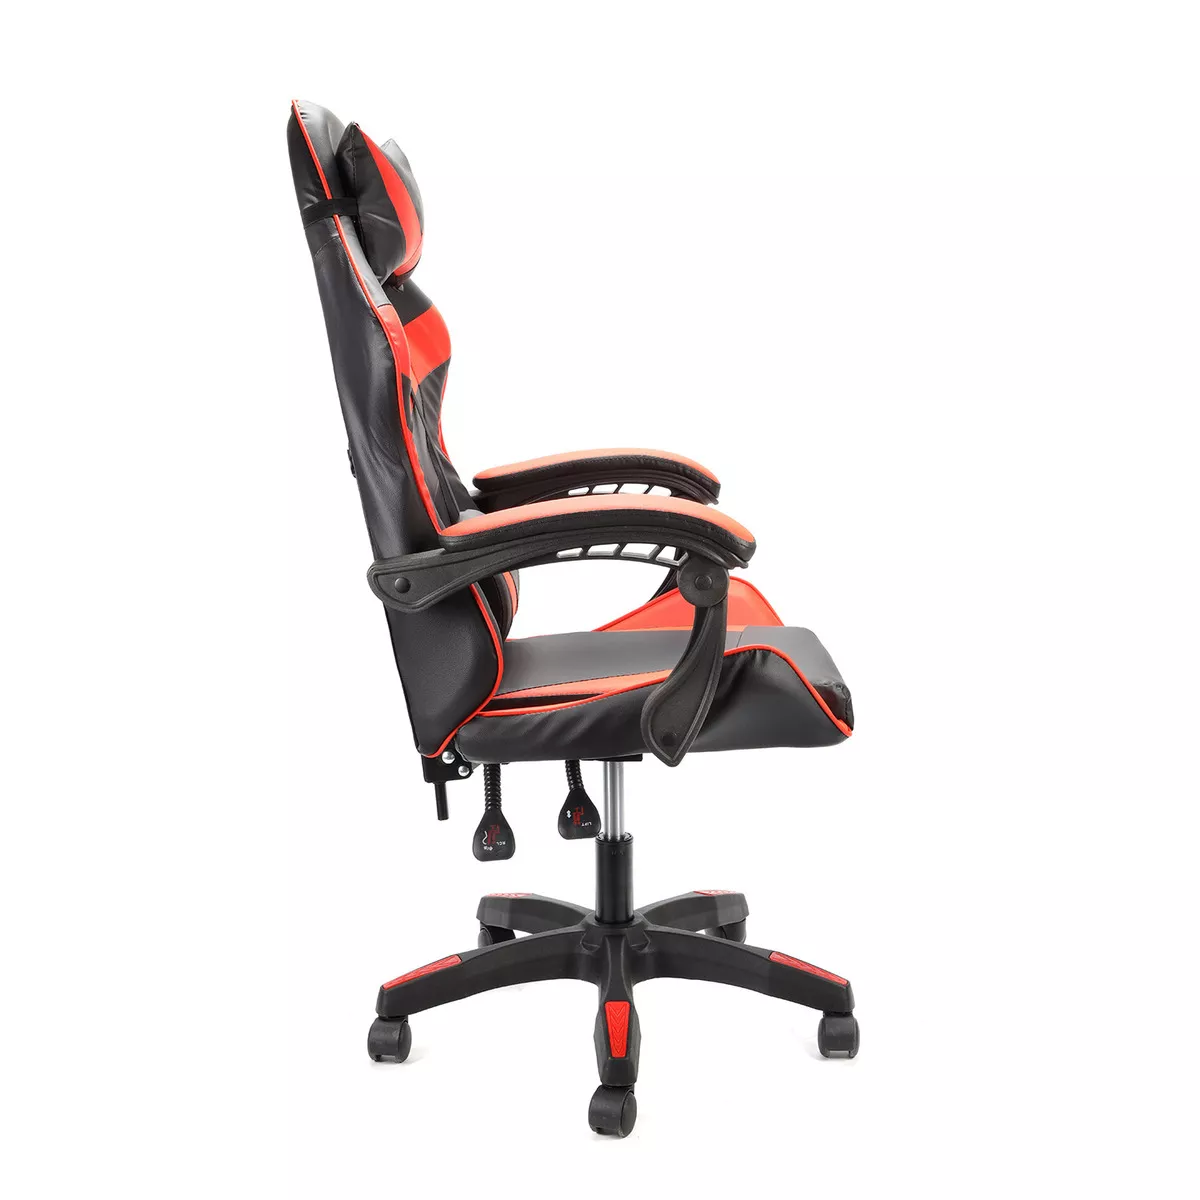 Primera imagen para búsqueda de silla oficina